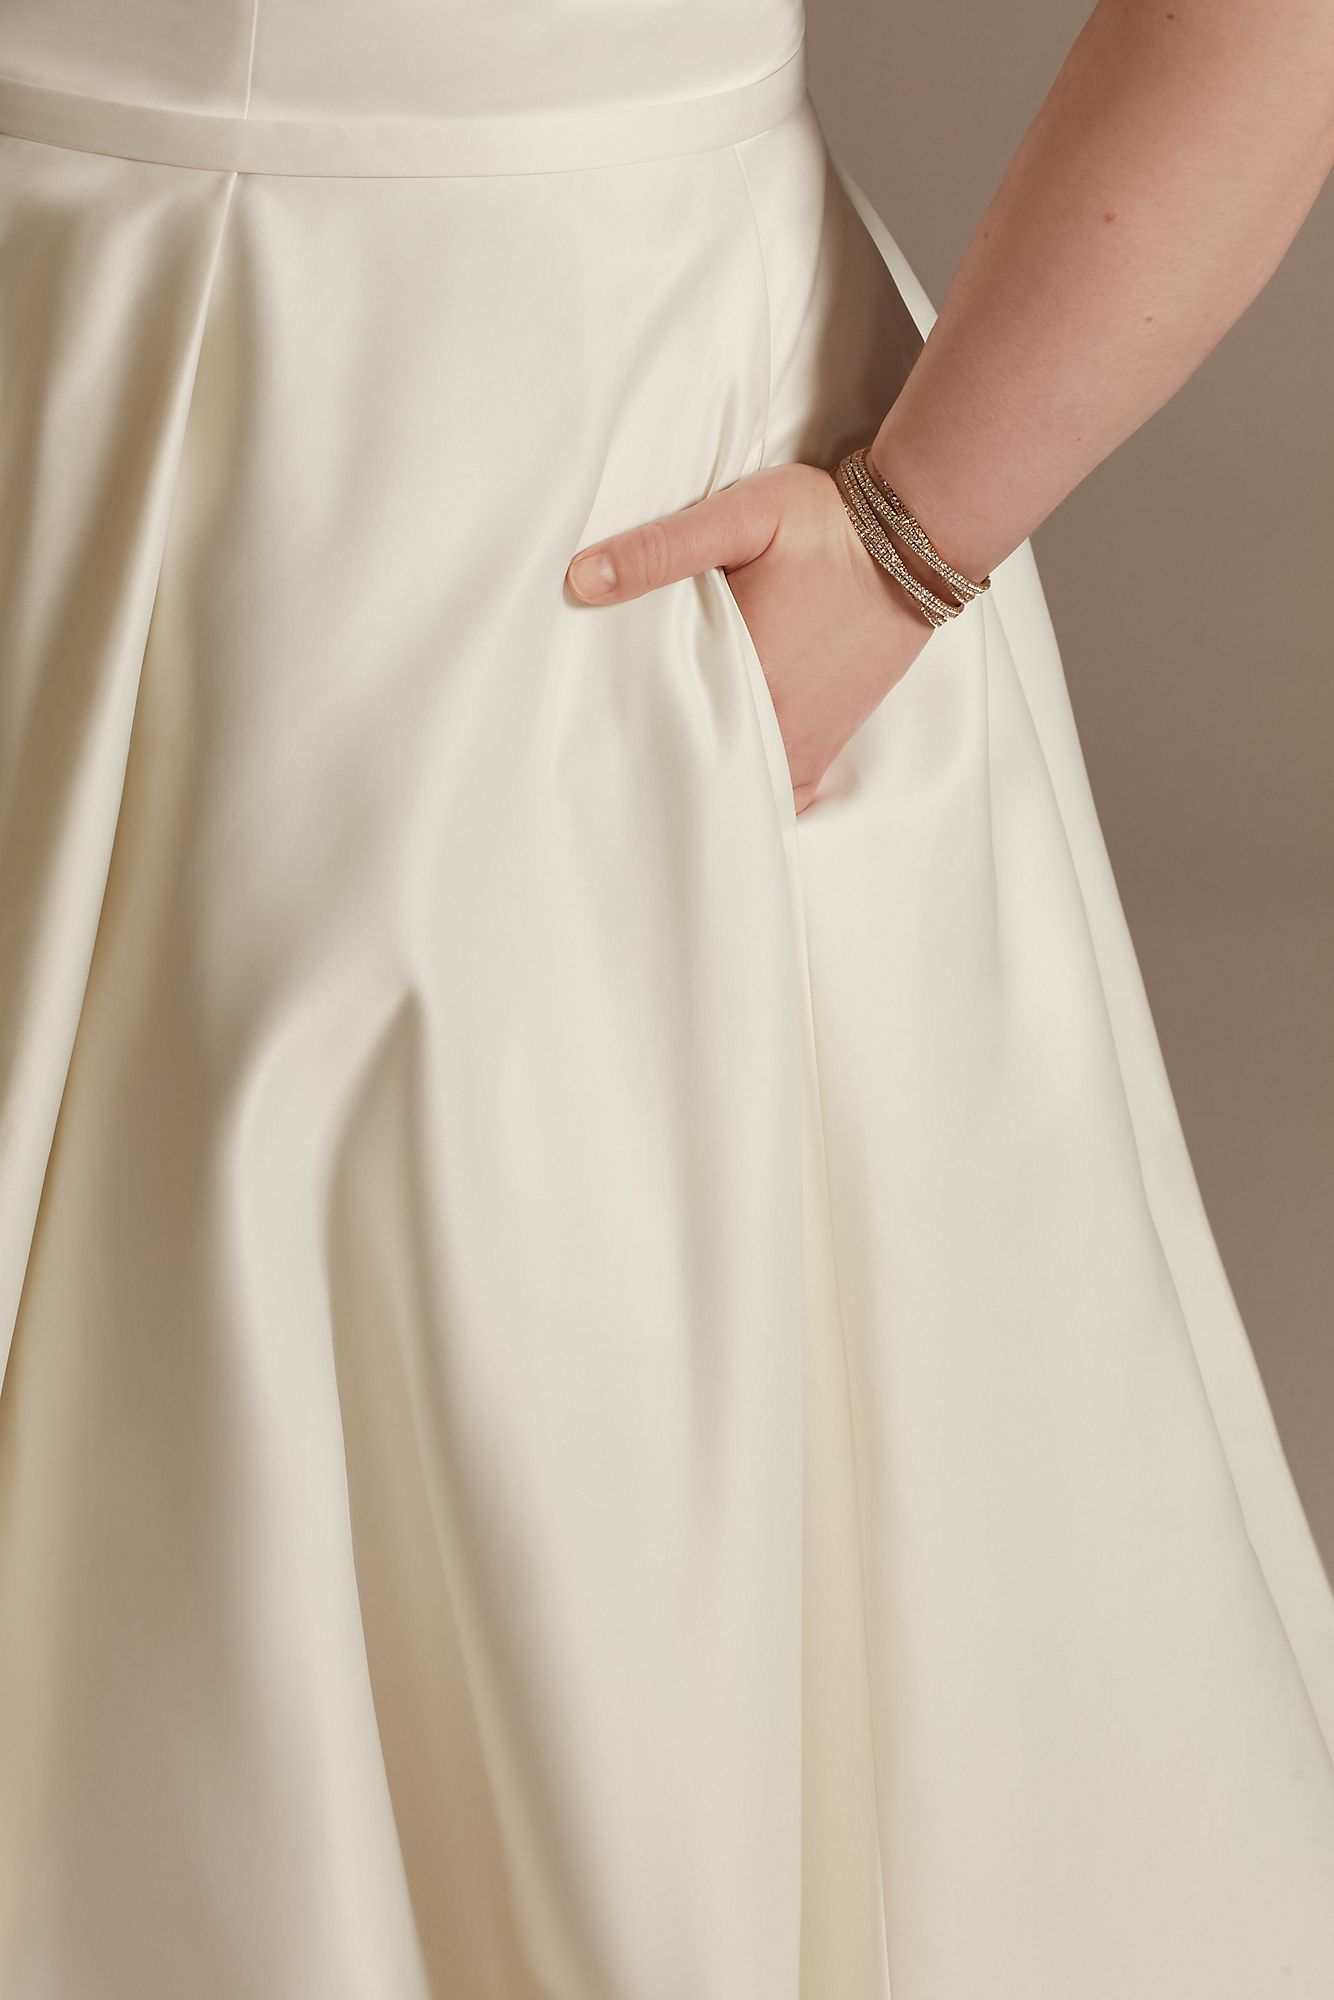 Strapless Plus Size Satin Wedding Dress with Slit DB Studio 9WG4017